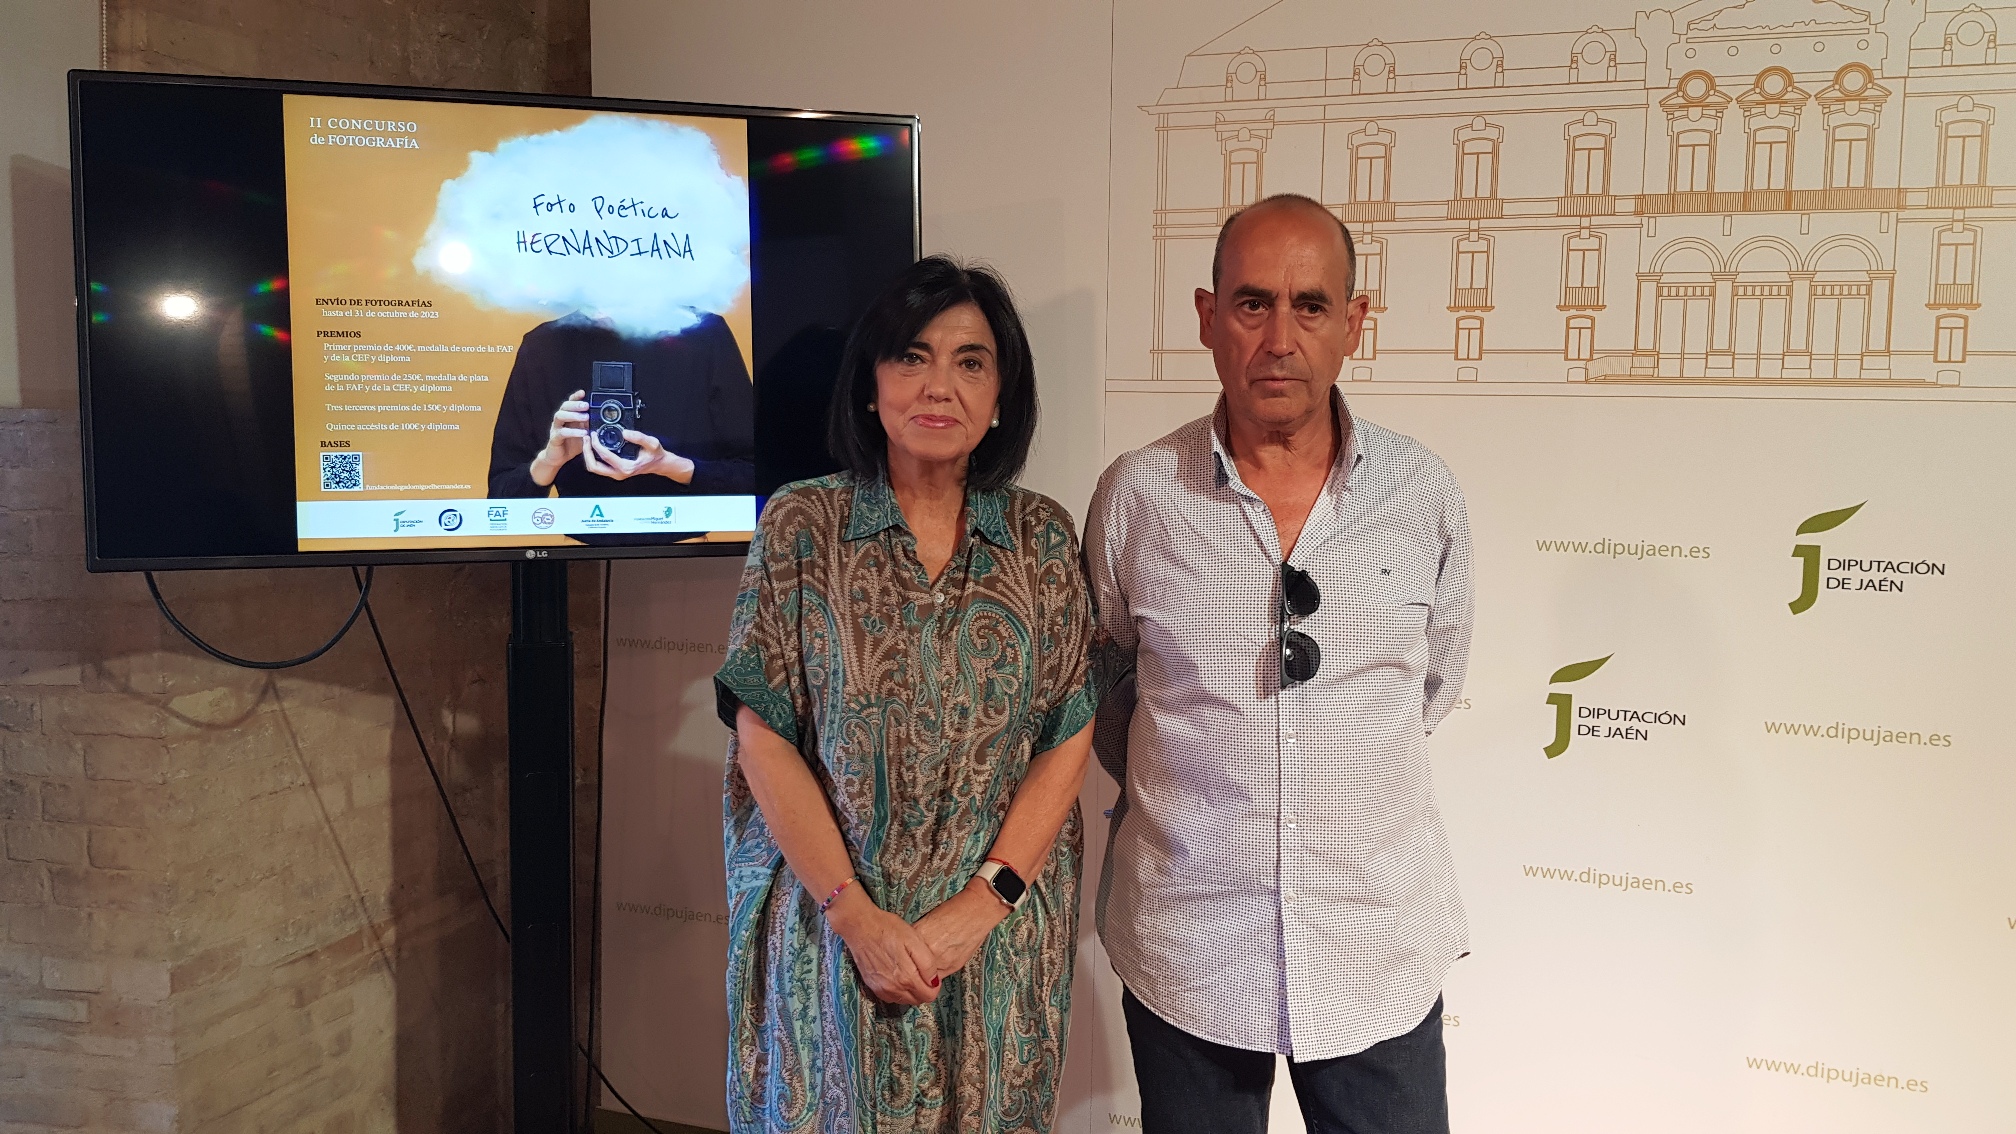 Francisca Medina y Francisco López han presentado el II Concurso Foto Poética Hernandiana. JPG de 975 KB | Diputación de Jaén | Ampliar imagen